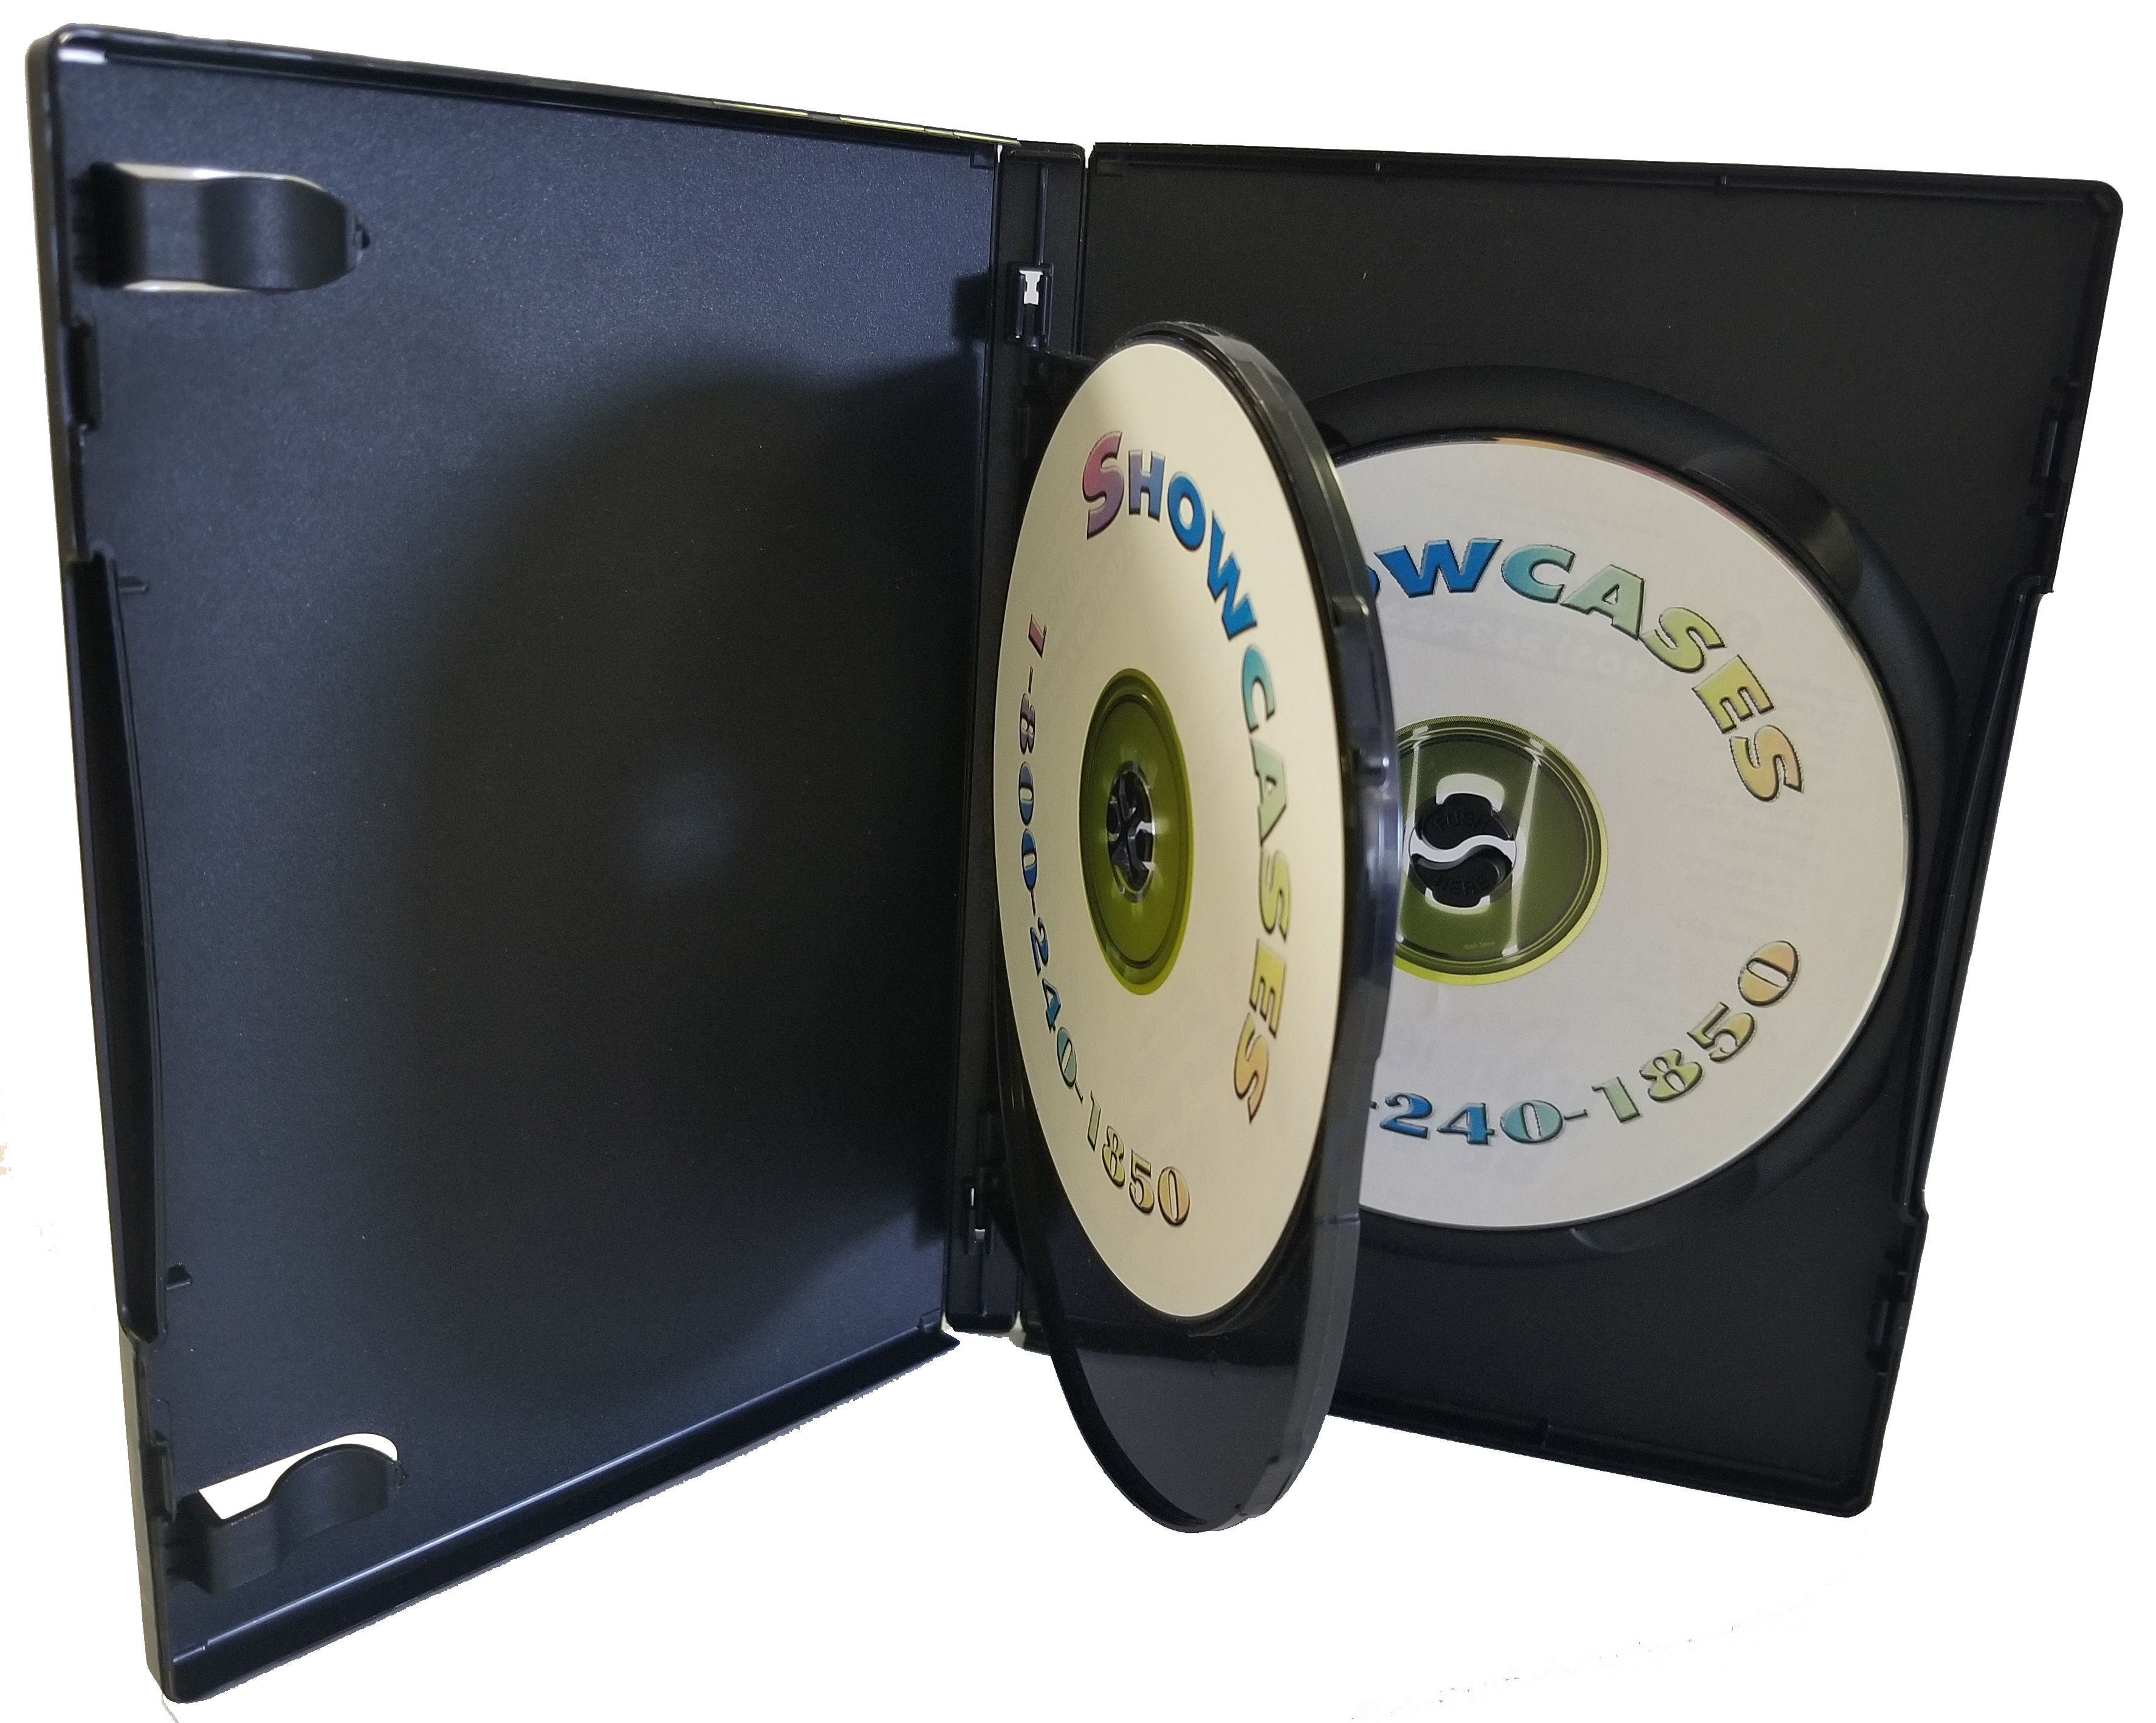 Memorex dvd storage case inserts template